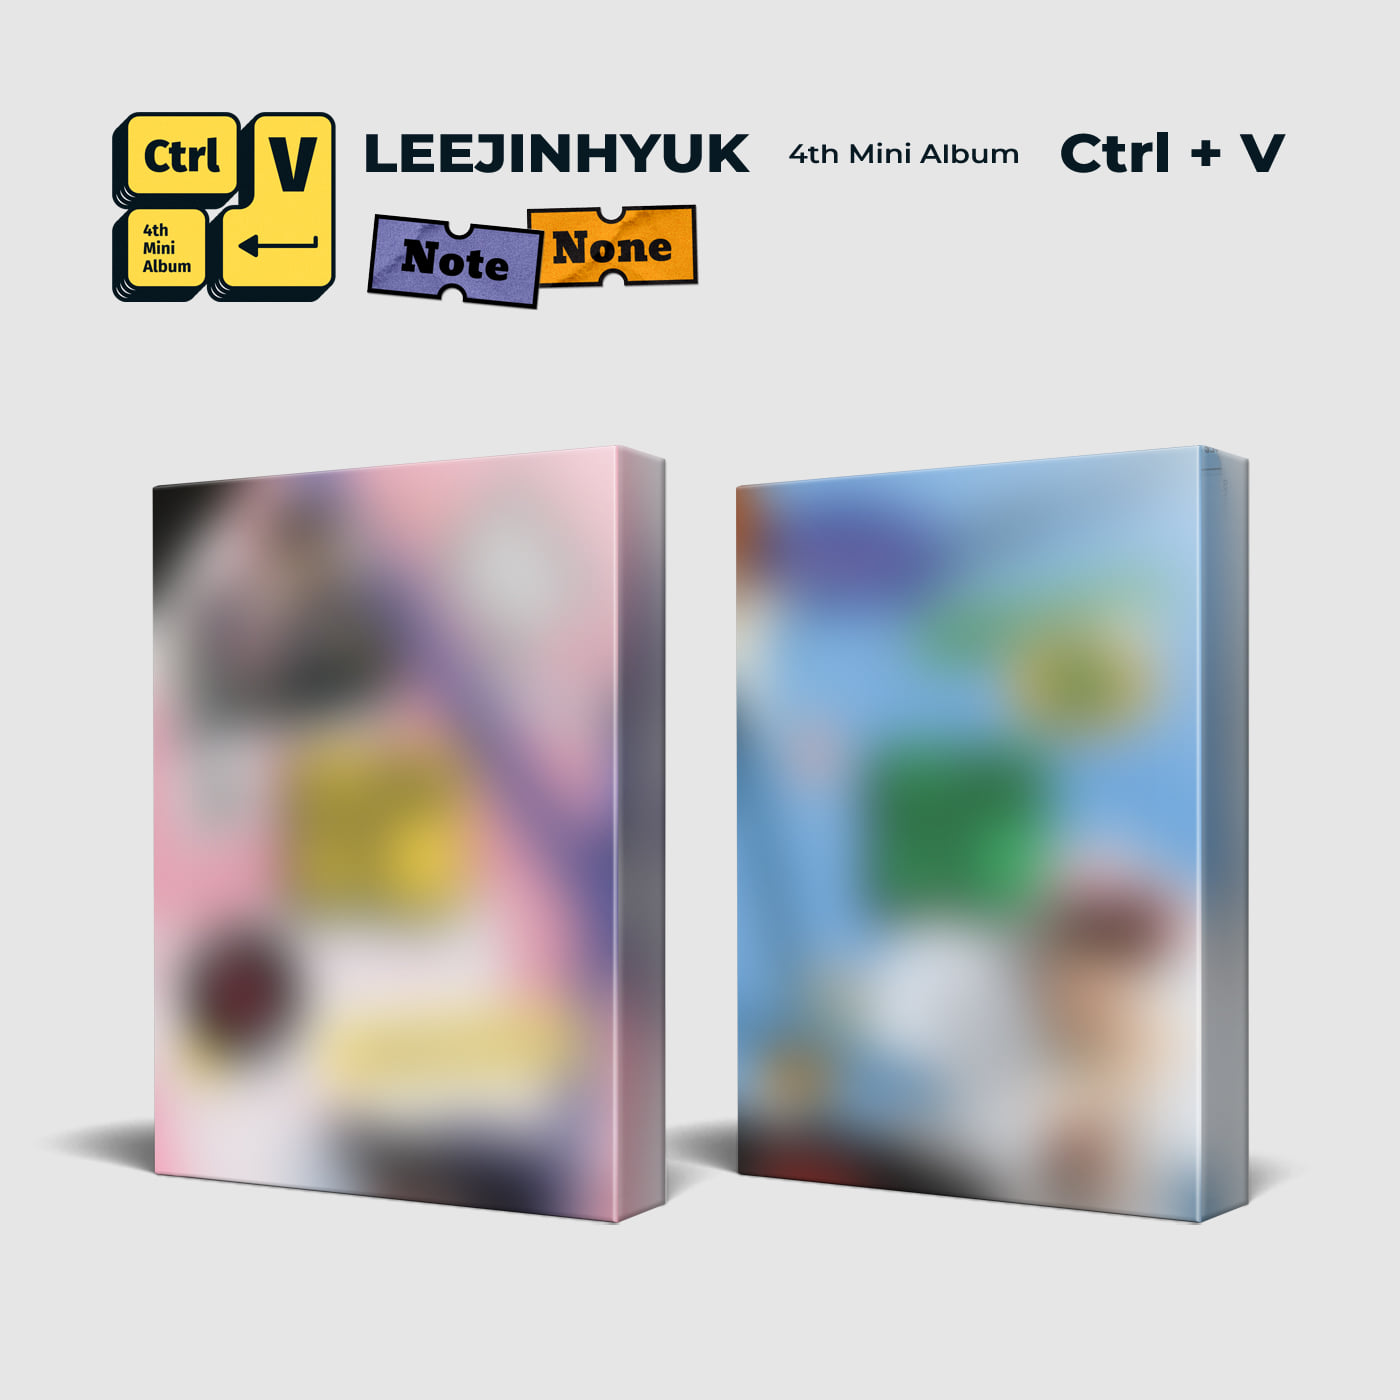 이진혁(LEE JIN HYUK) - 미니 4집 [Ctrl+V] (랜덤 버전)케이팝스토어(kpop store)